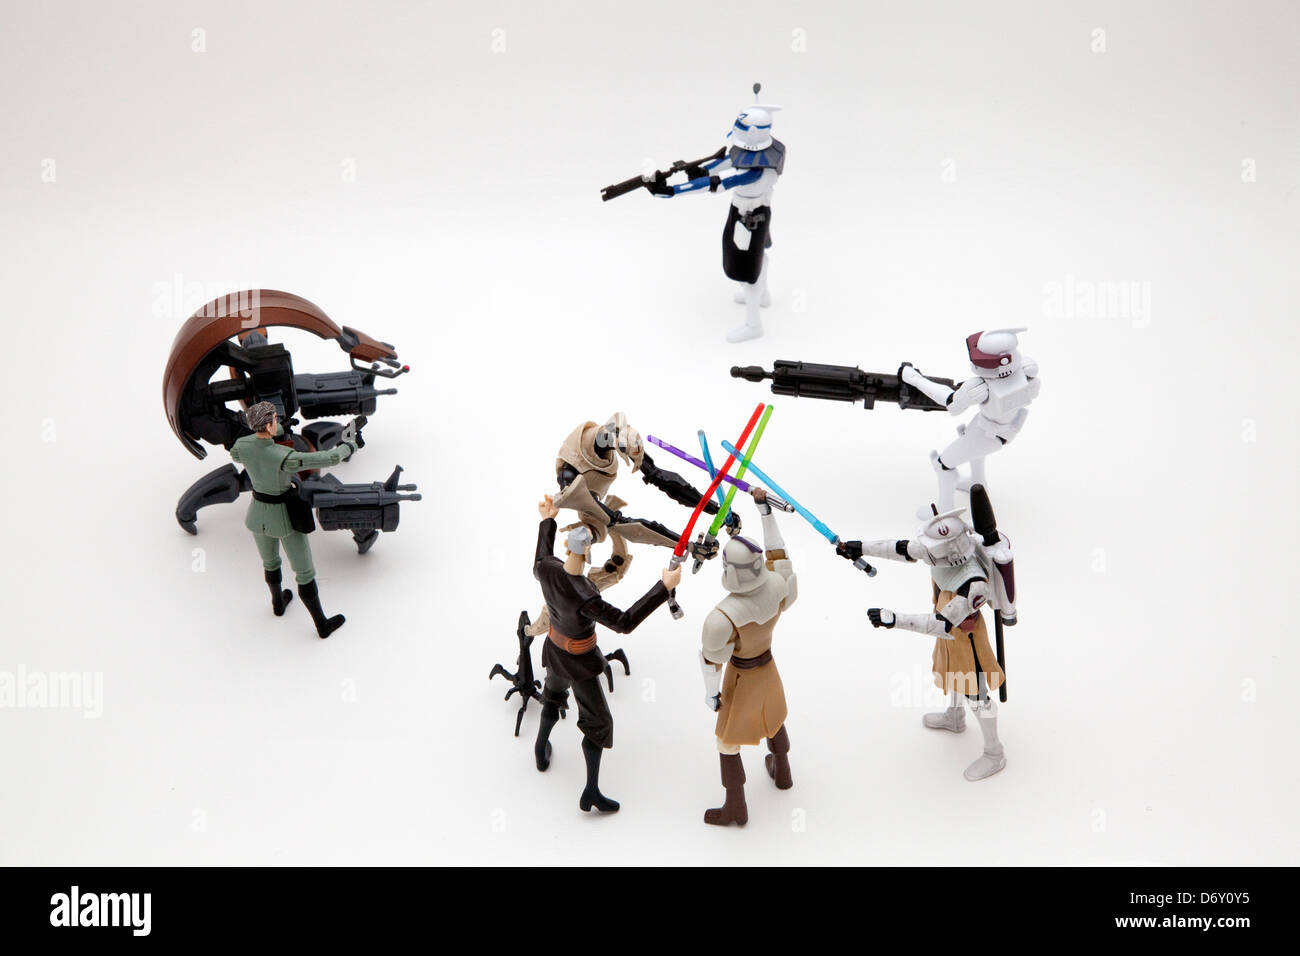 Figurines Star Wars dans la bataille avec des sabres. St Paul Minnesota MN USA Banque D'Images